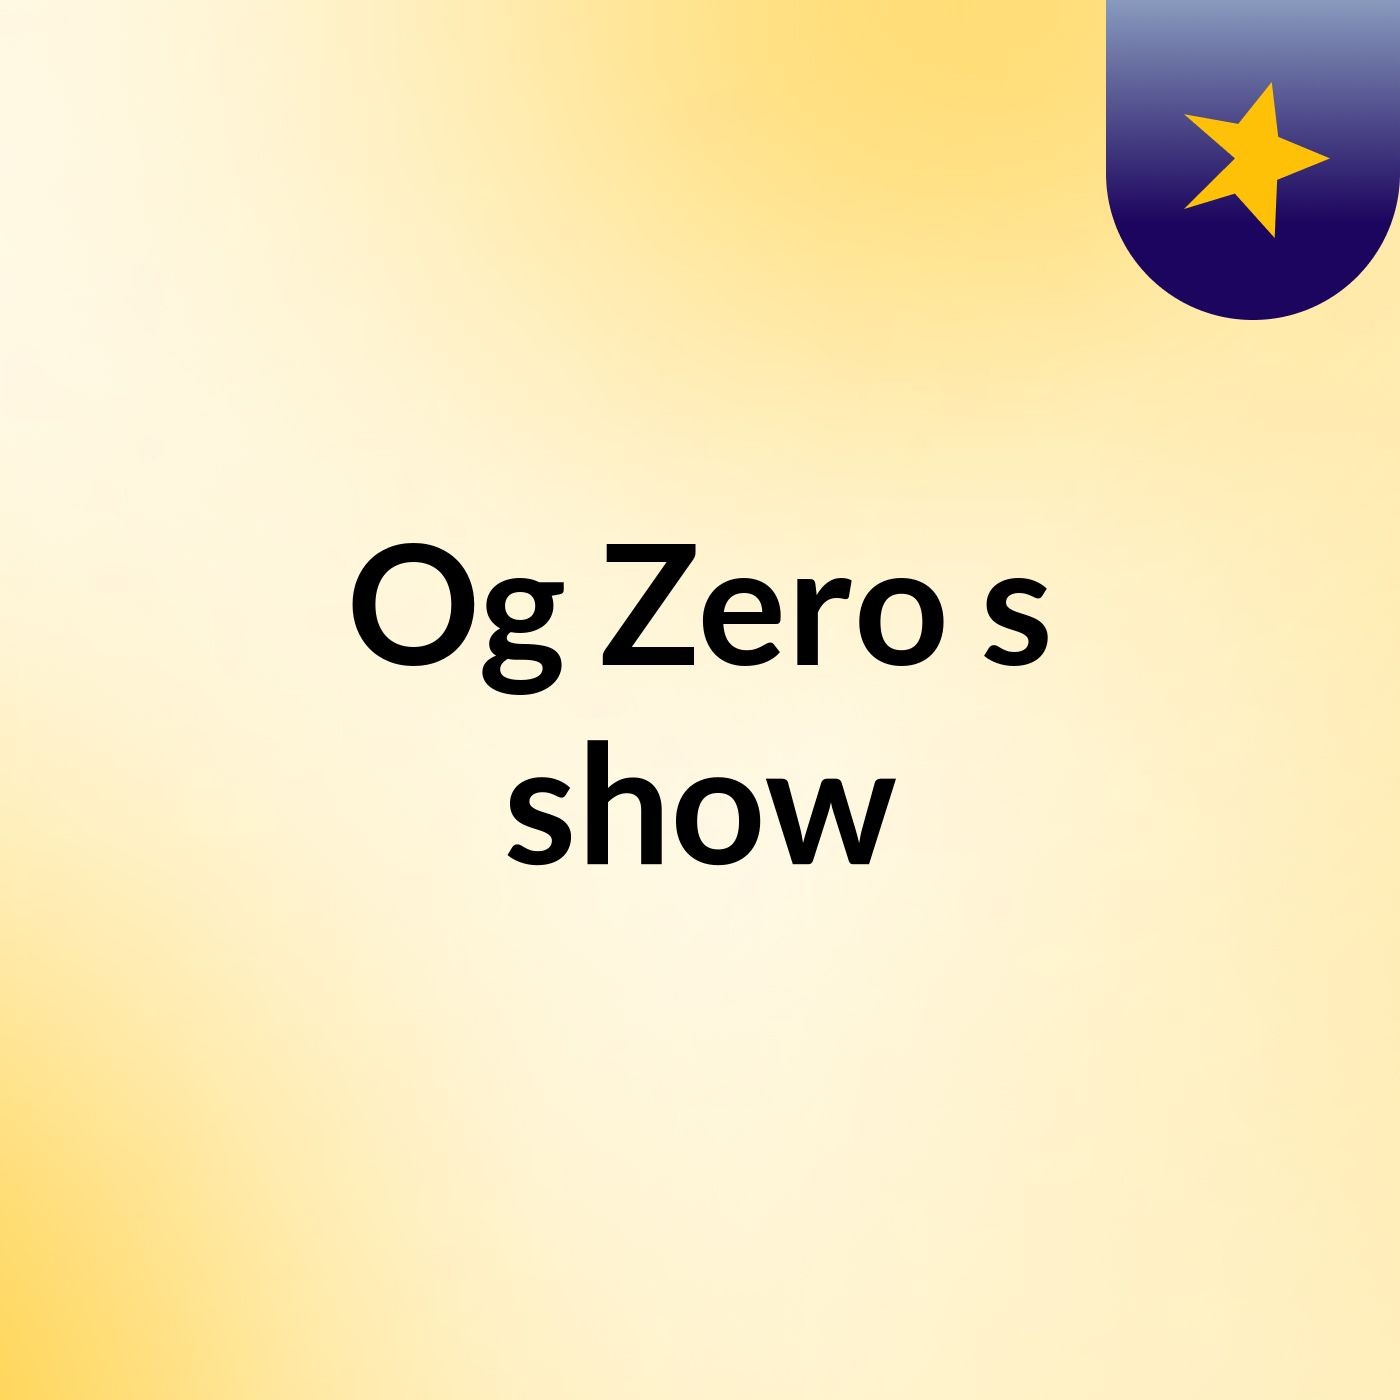 Episode 1 - Og Zero's show